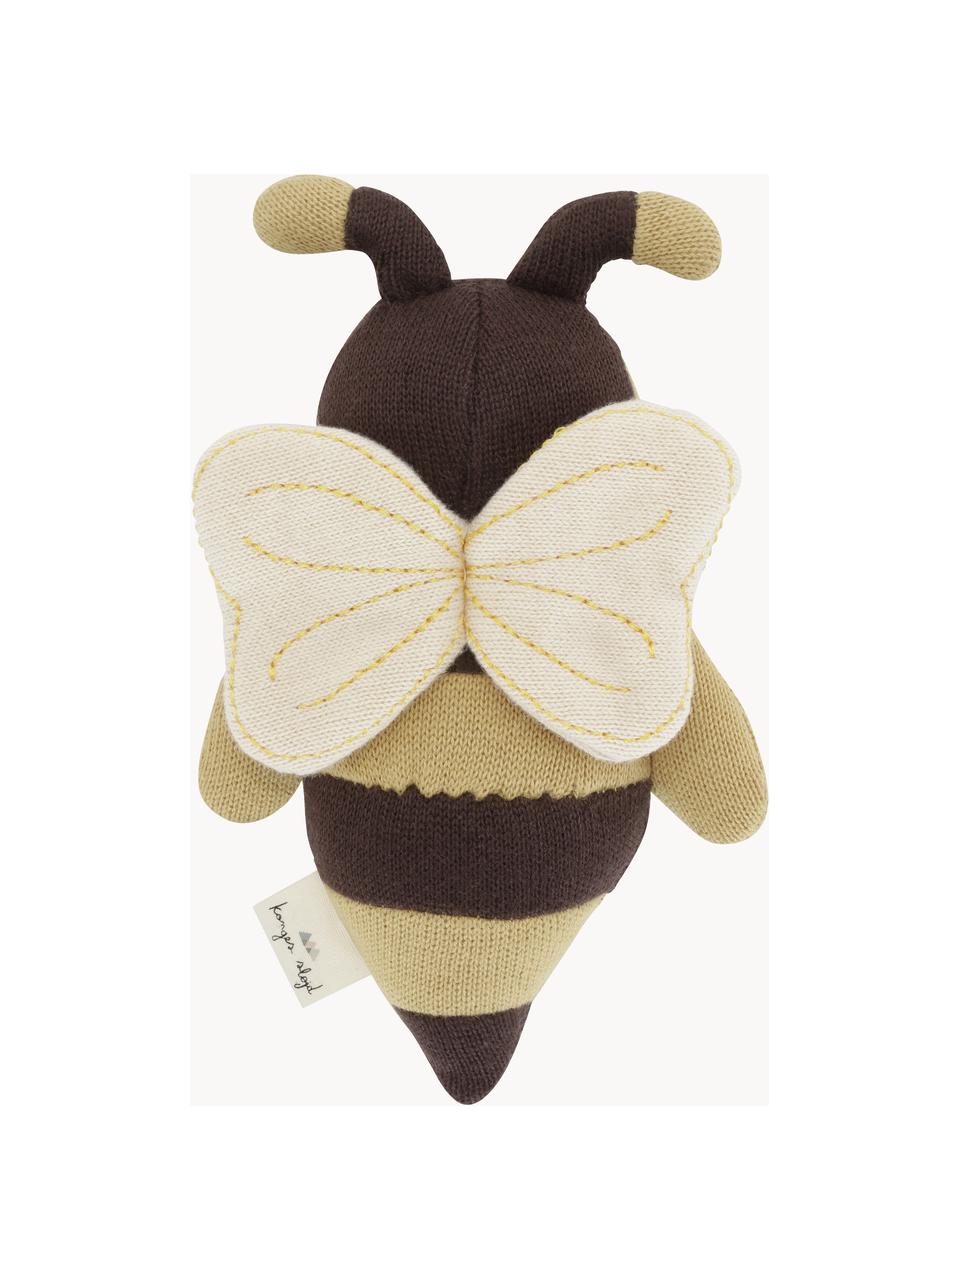 Bavlněná plyšová hračka Bee, Okrová, tmavě hnědá, D 15 cm